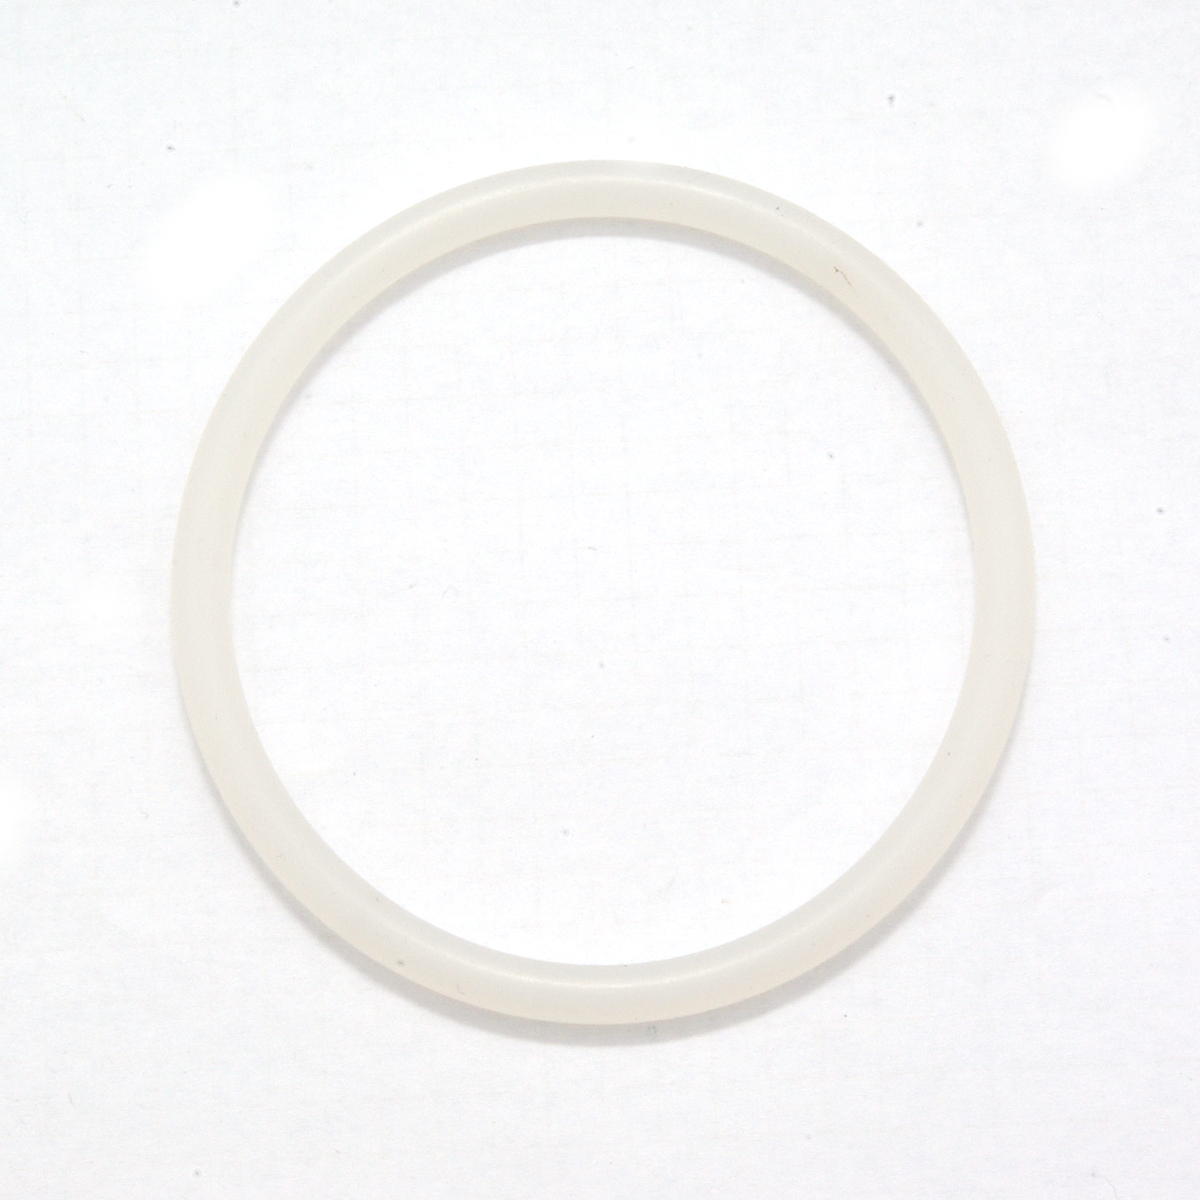 Dichtring / O-Ring 2,57 x 1,78 mm Silikon/MVQ 70 transparent